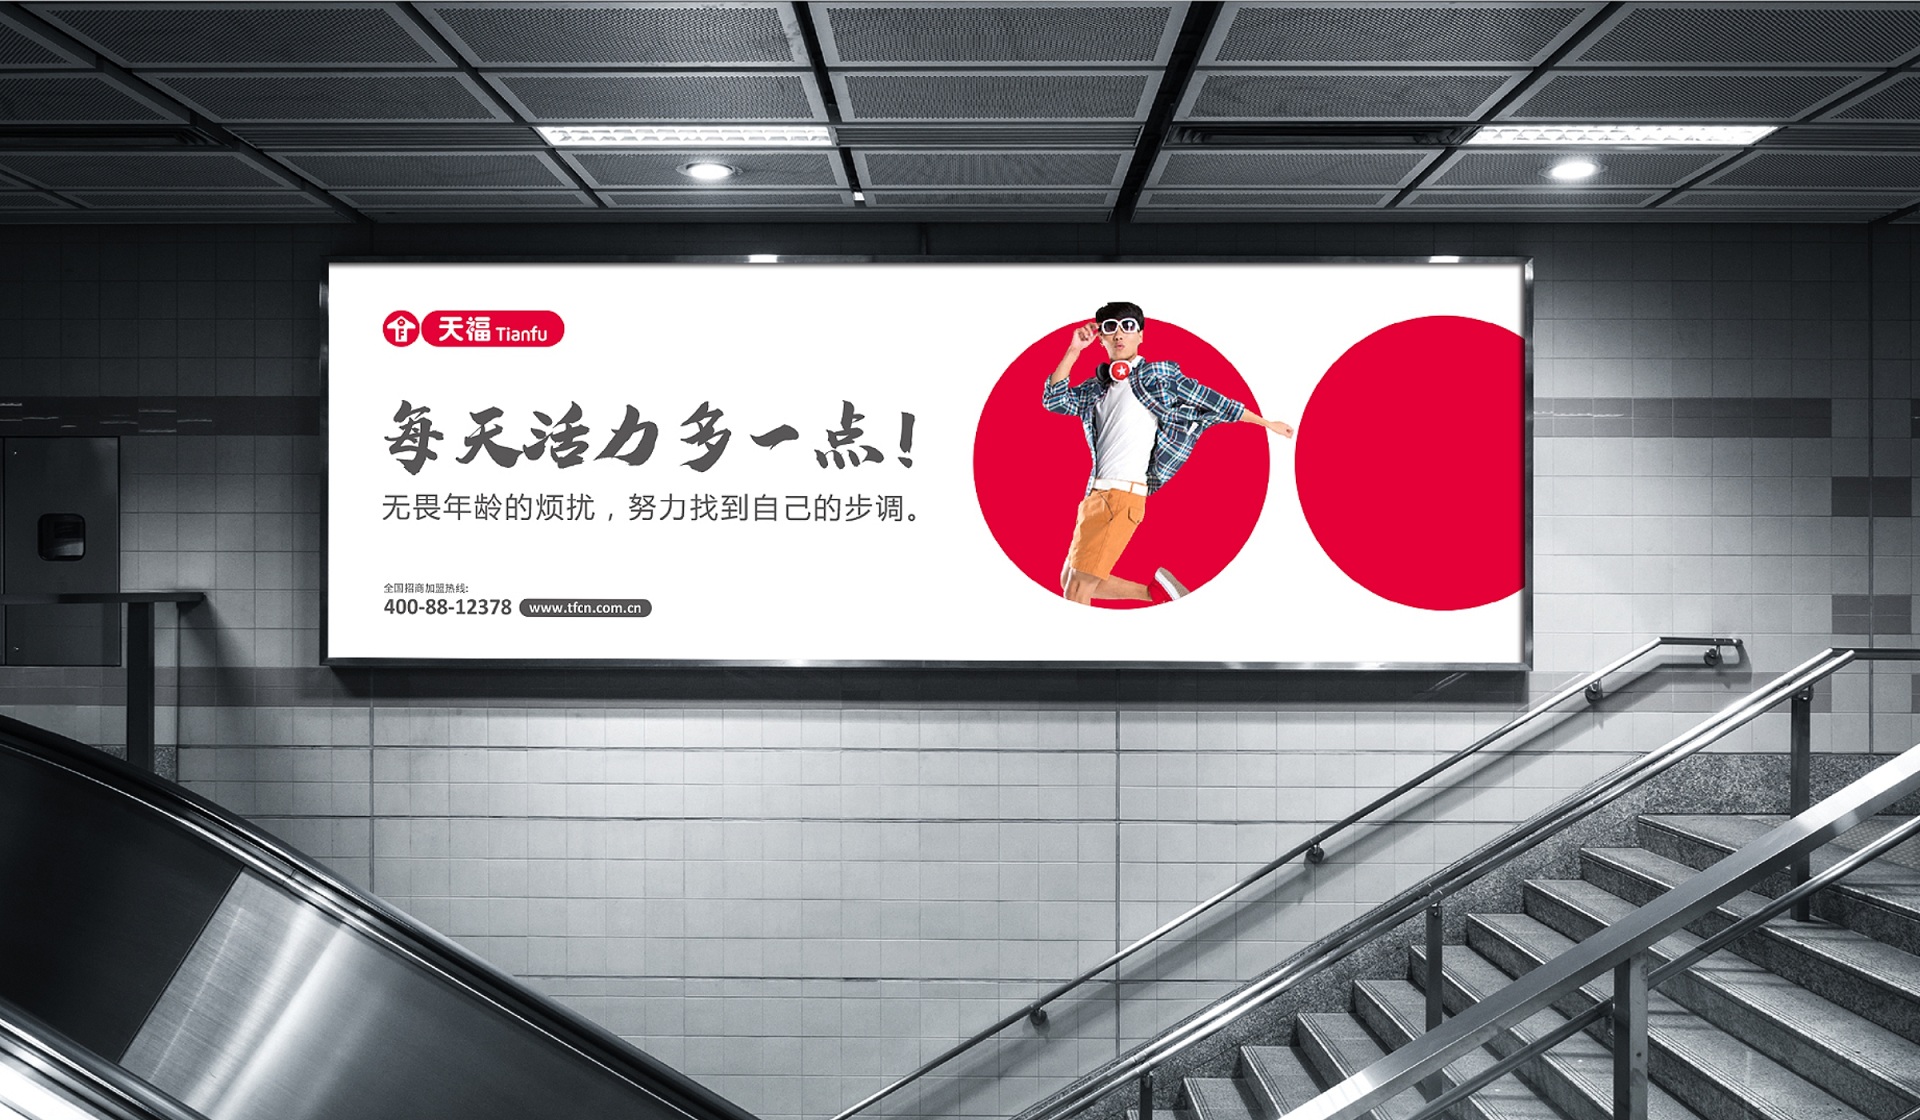 天福便利店创意地铁广告